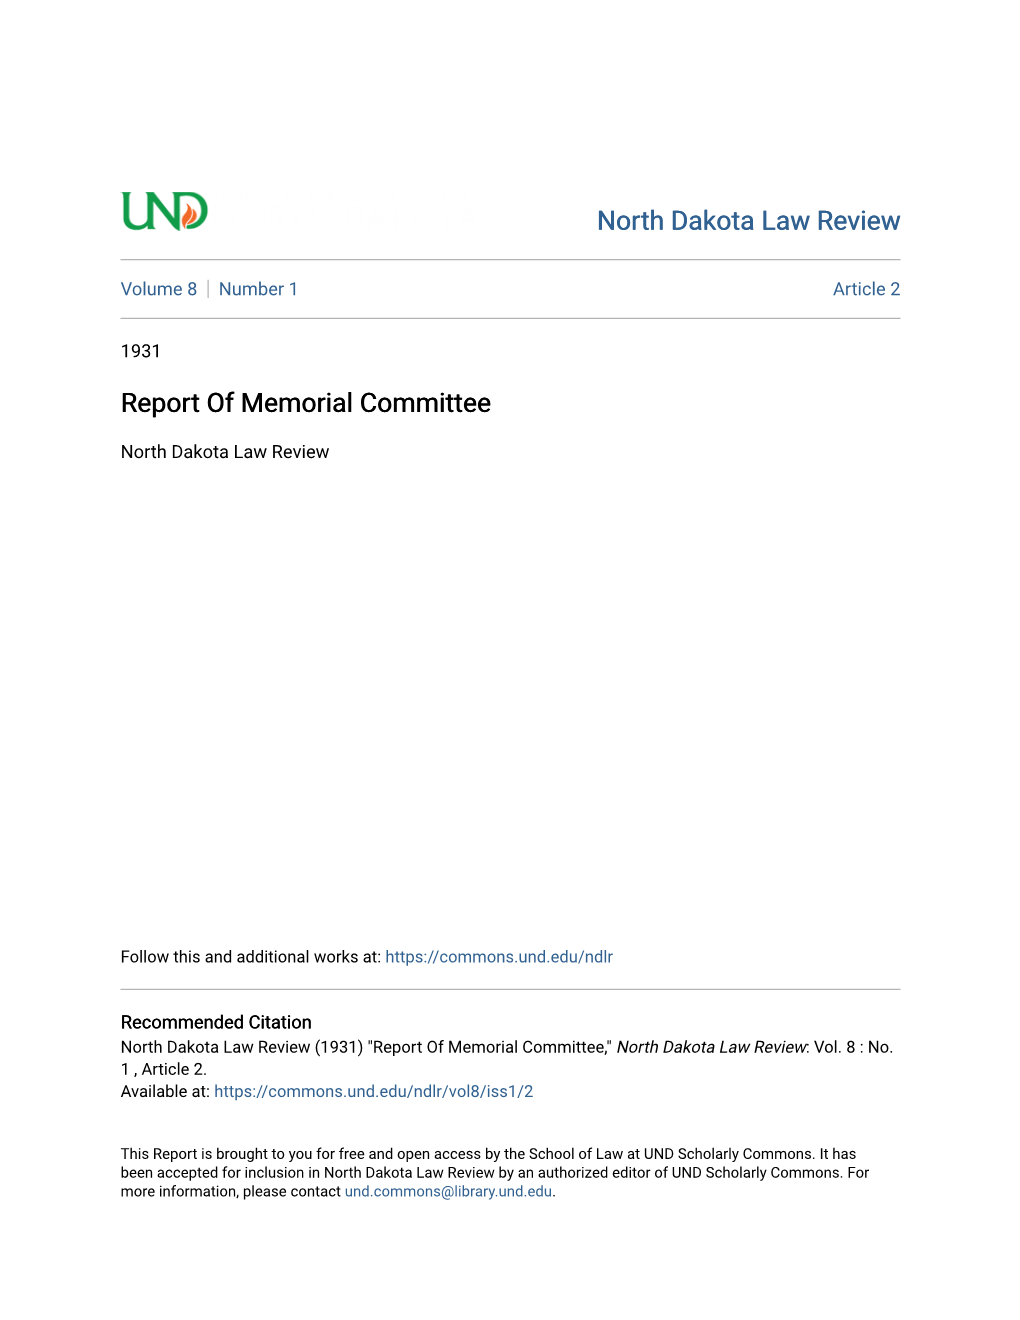 Report of Memorial Committee